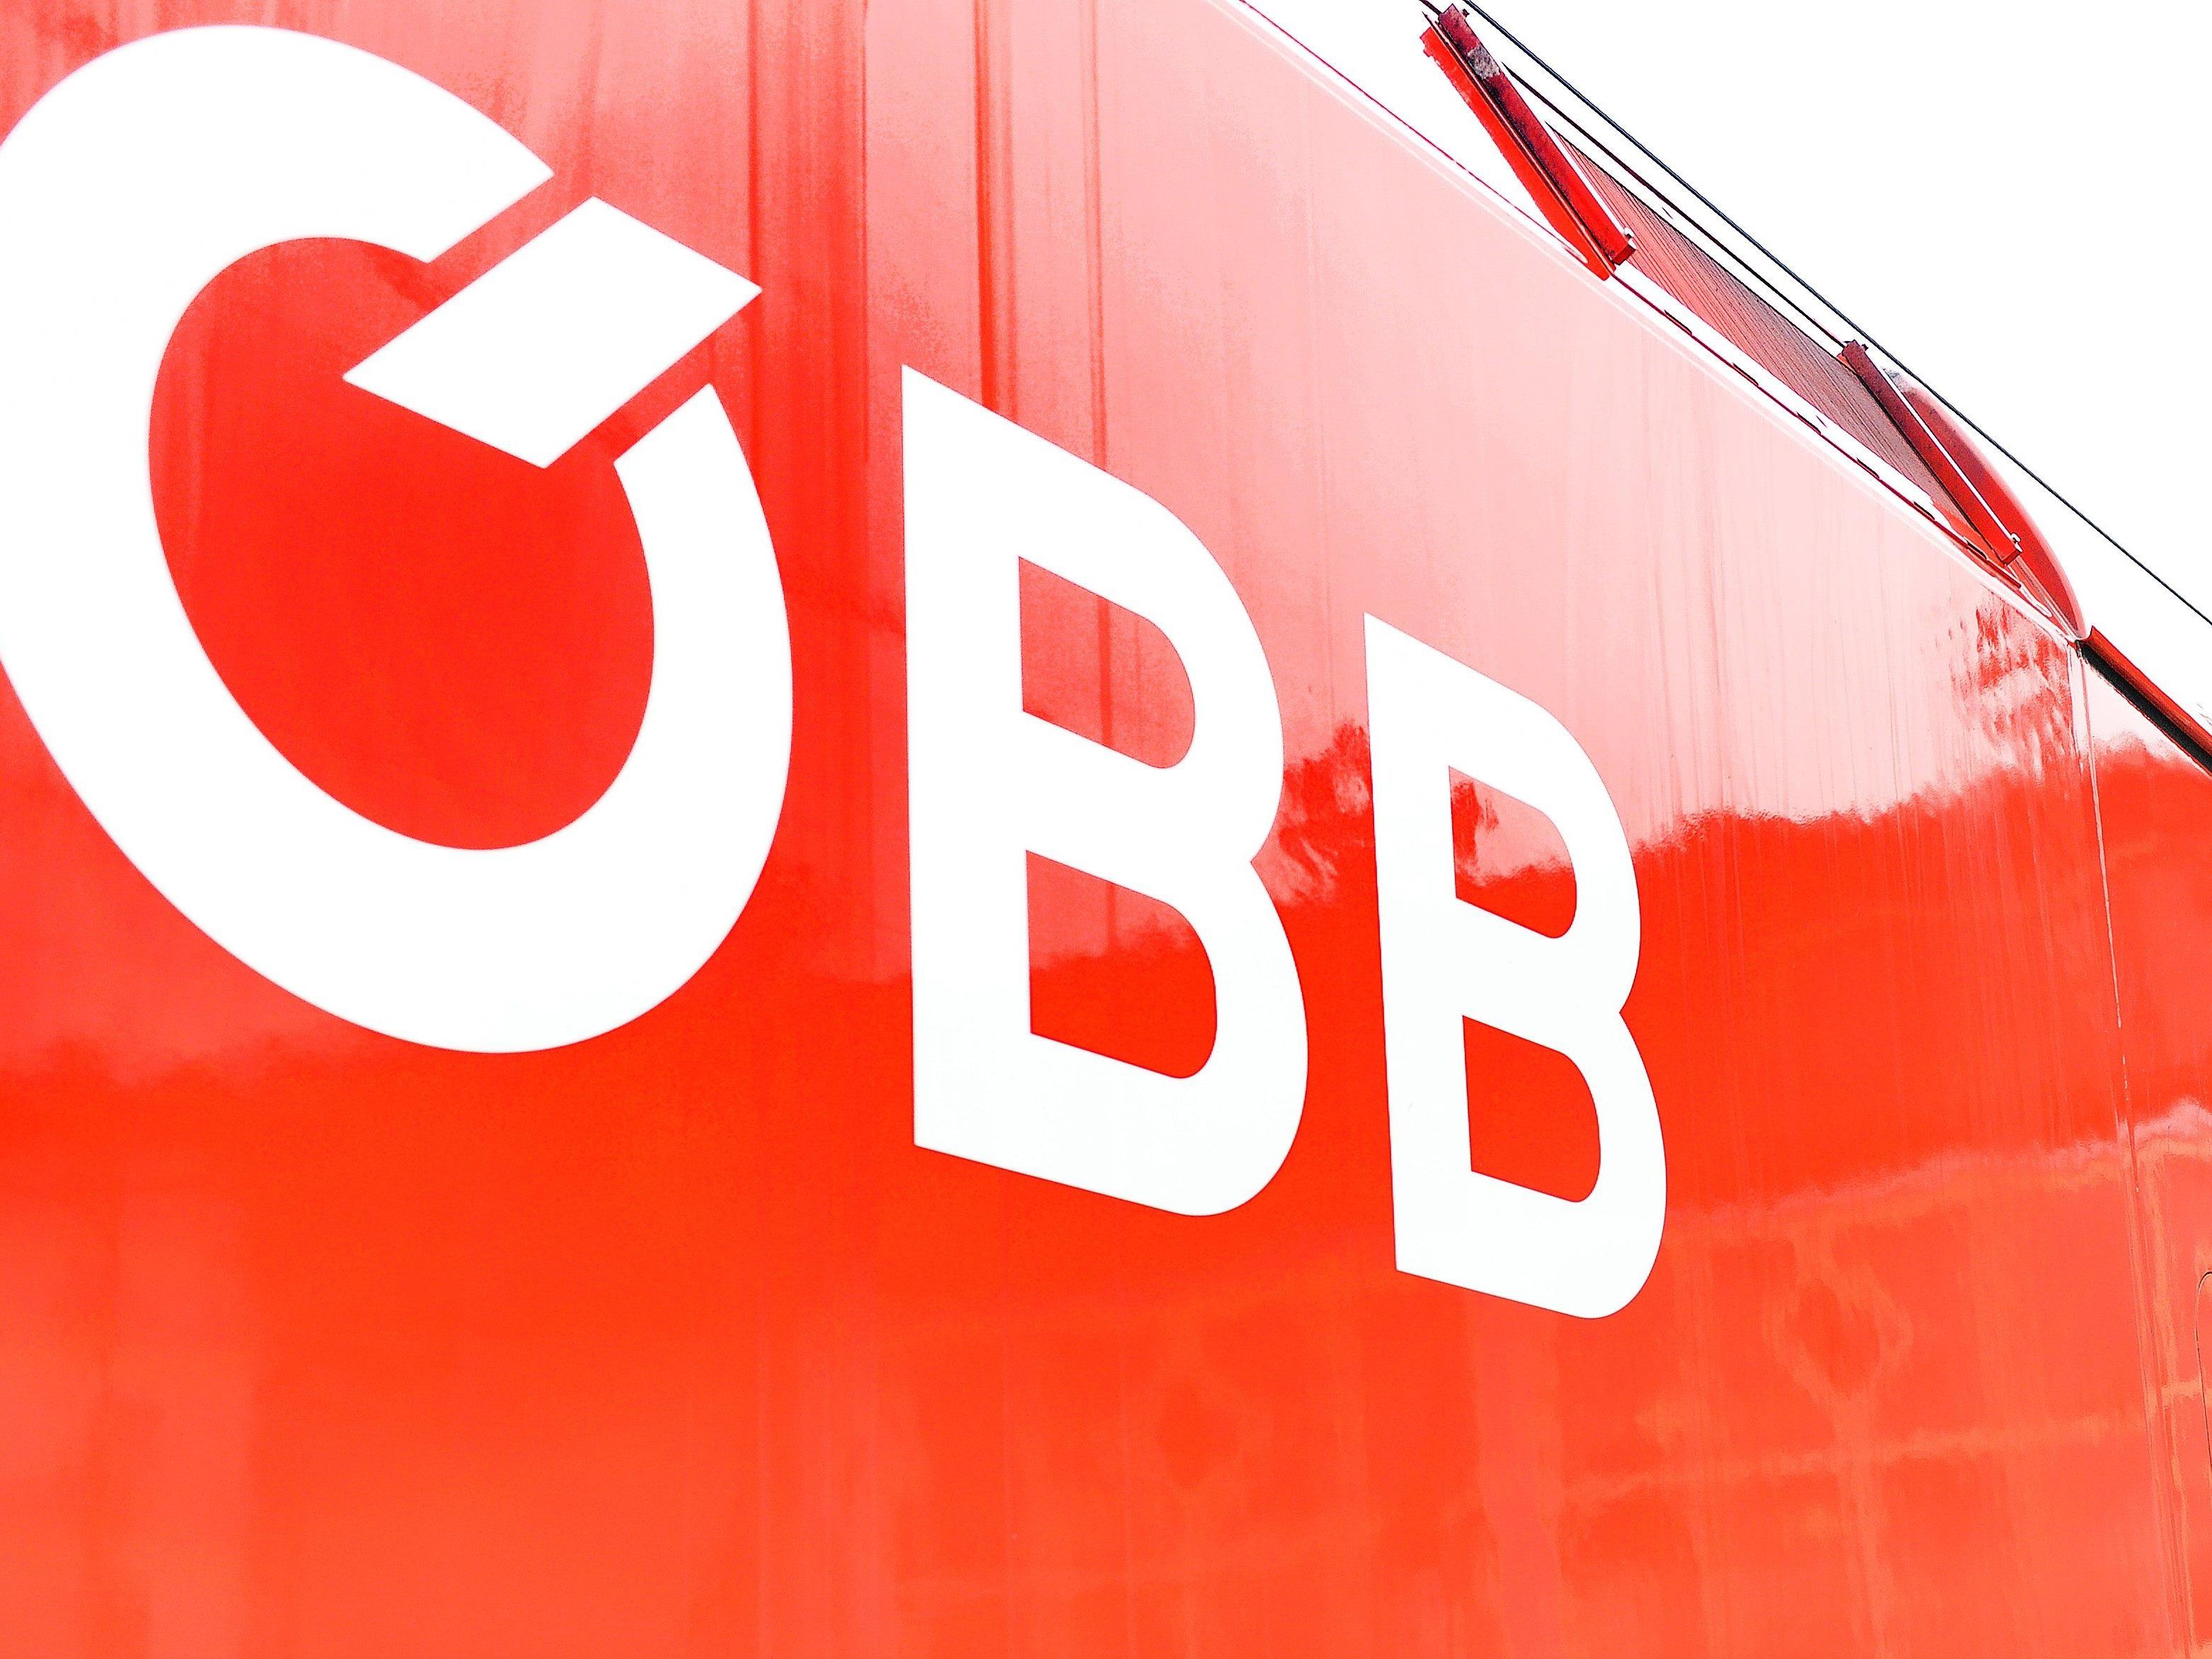 97,1 Prozent der ÖBB-Züge kamen 2014 pünktlich in den Bahnhöfen an.